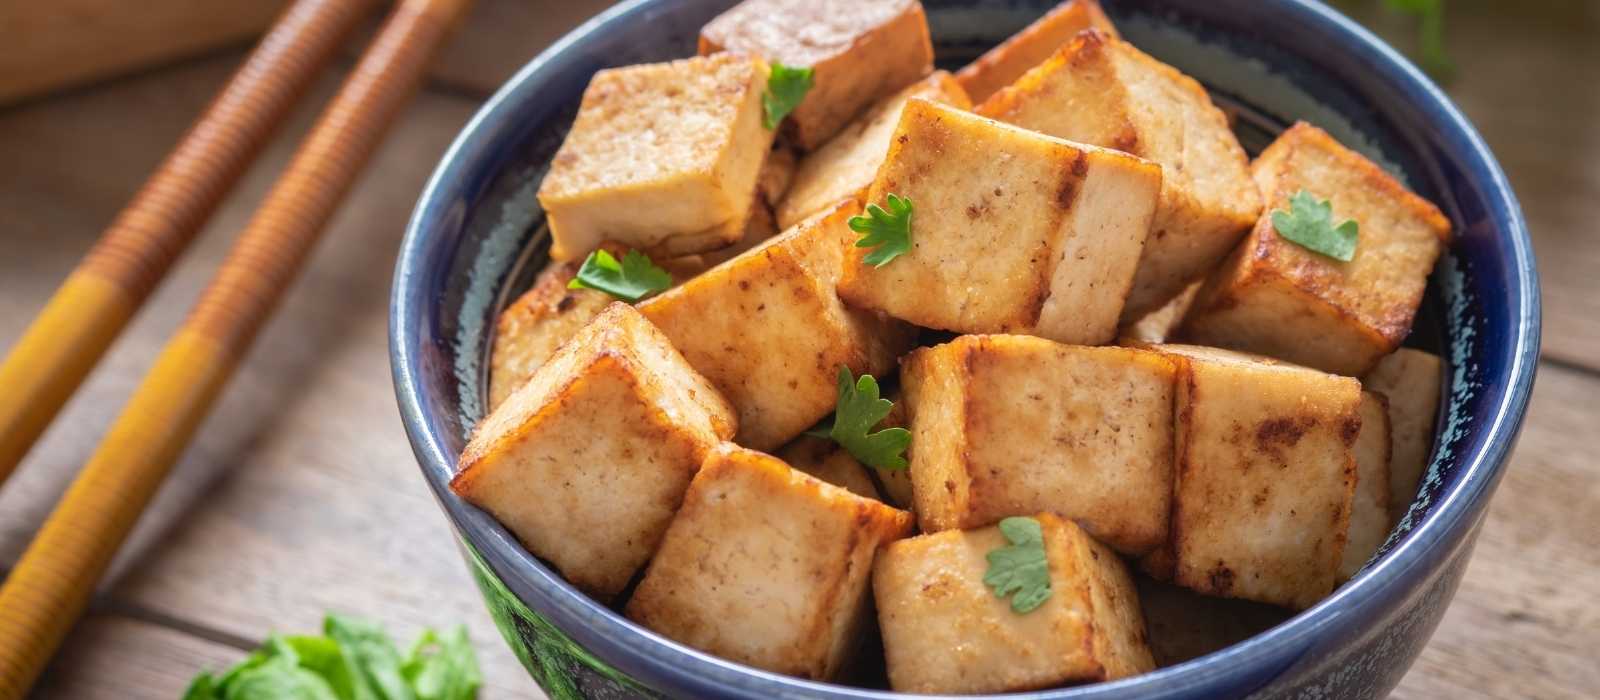 How to Prepare Tofu